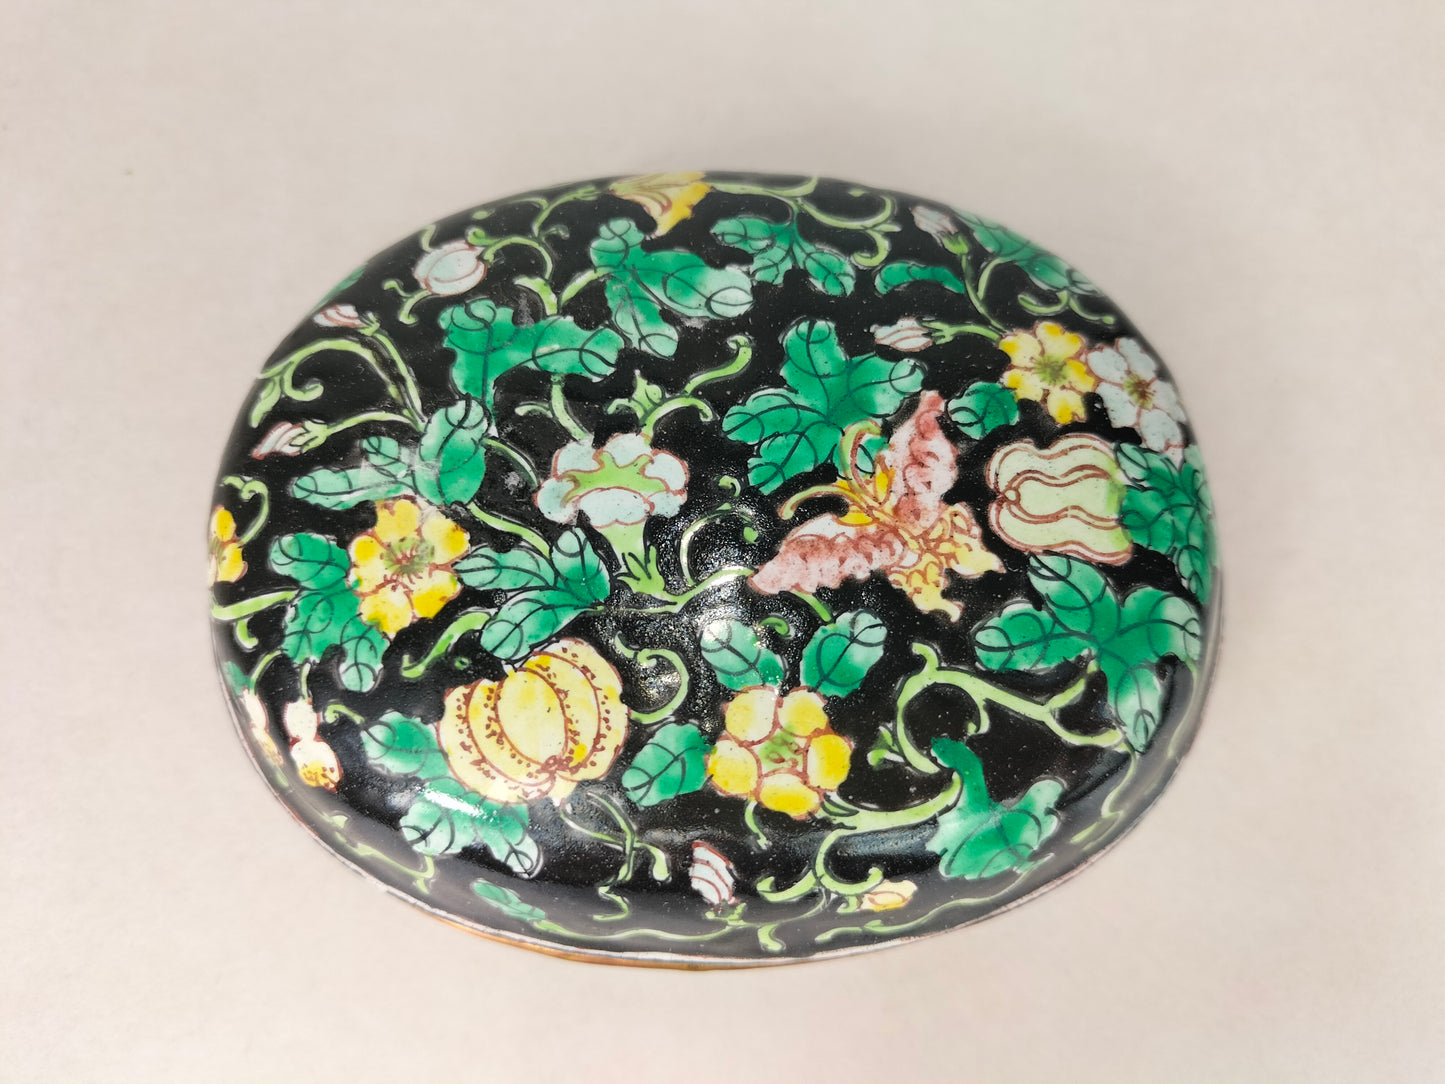 صندوق مغطى بمينا كانتون صيني مزين بالفراشات والزهور // منتصف القرن العشرين